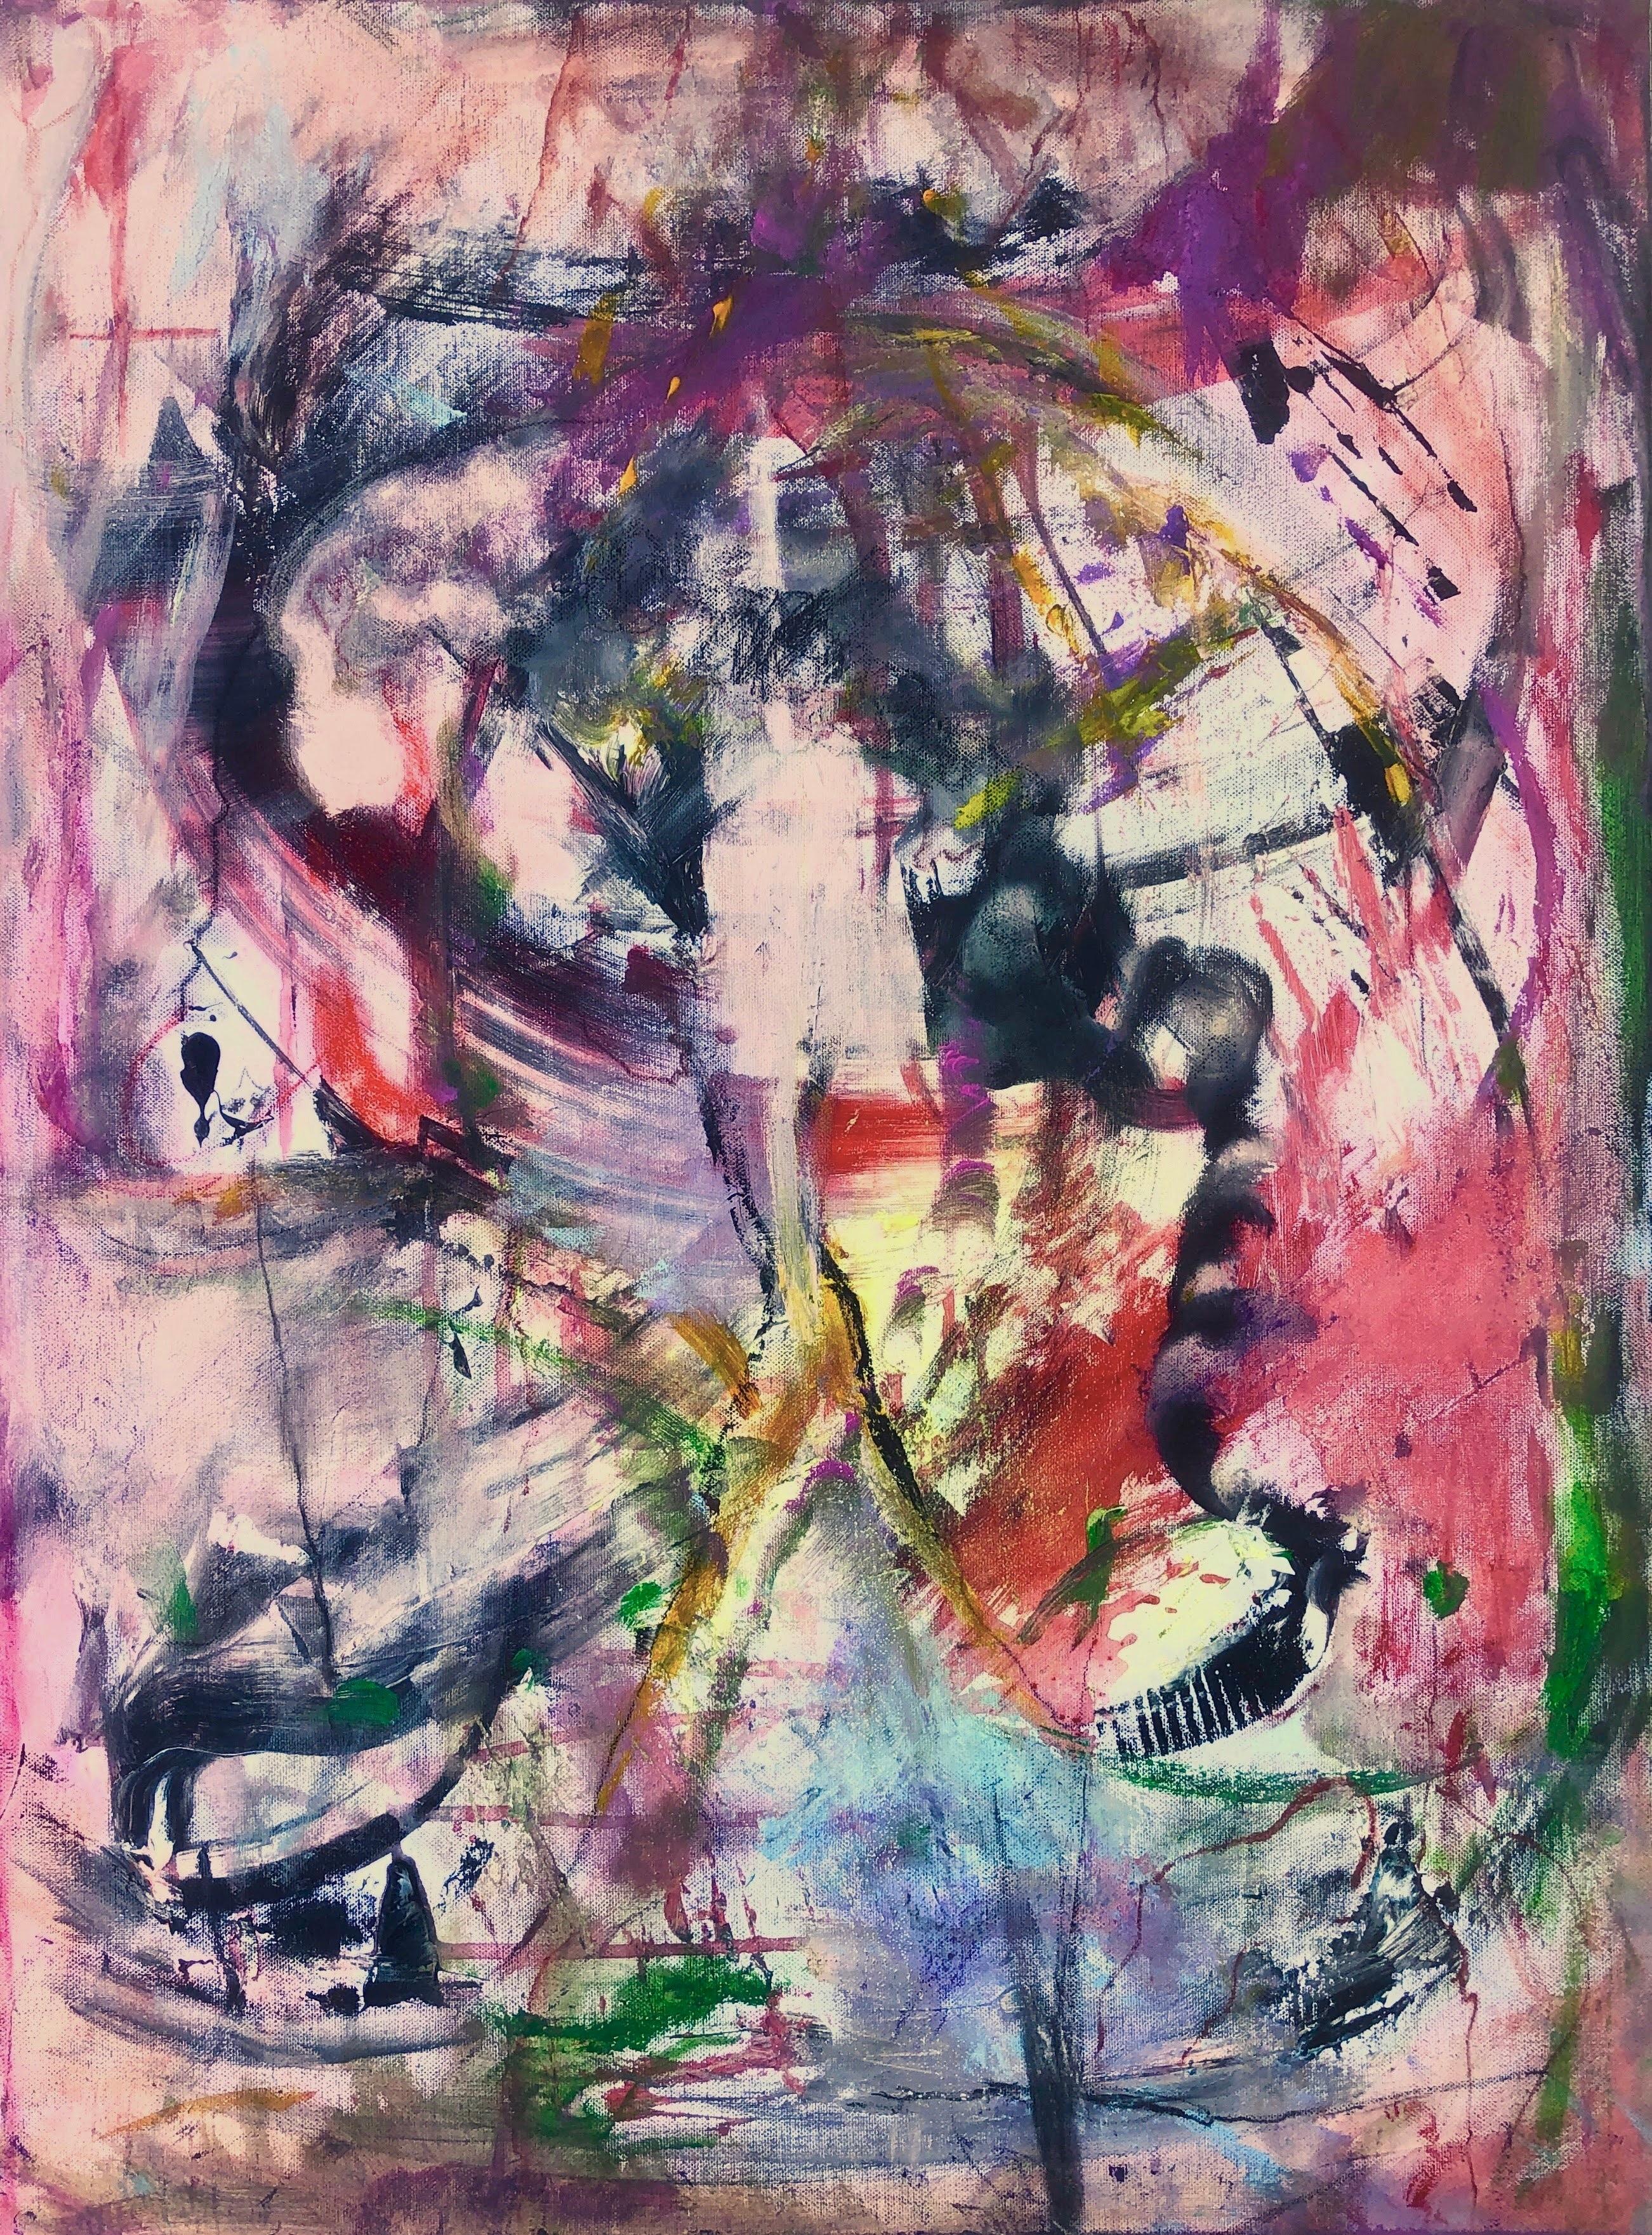 Abstract Painting Nerea Caos - Peinture à l'huile sur toile « jesus christ superstar » (surnom de superstar) expressionnisme abstrait